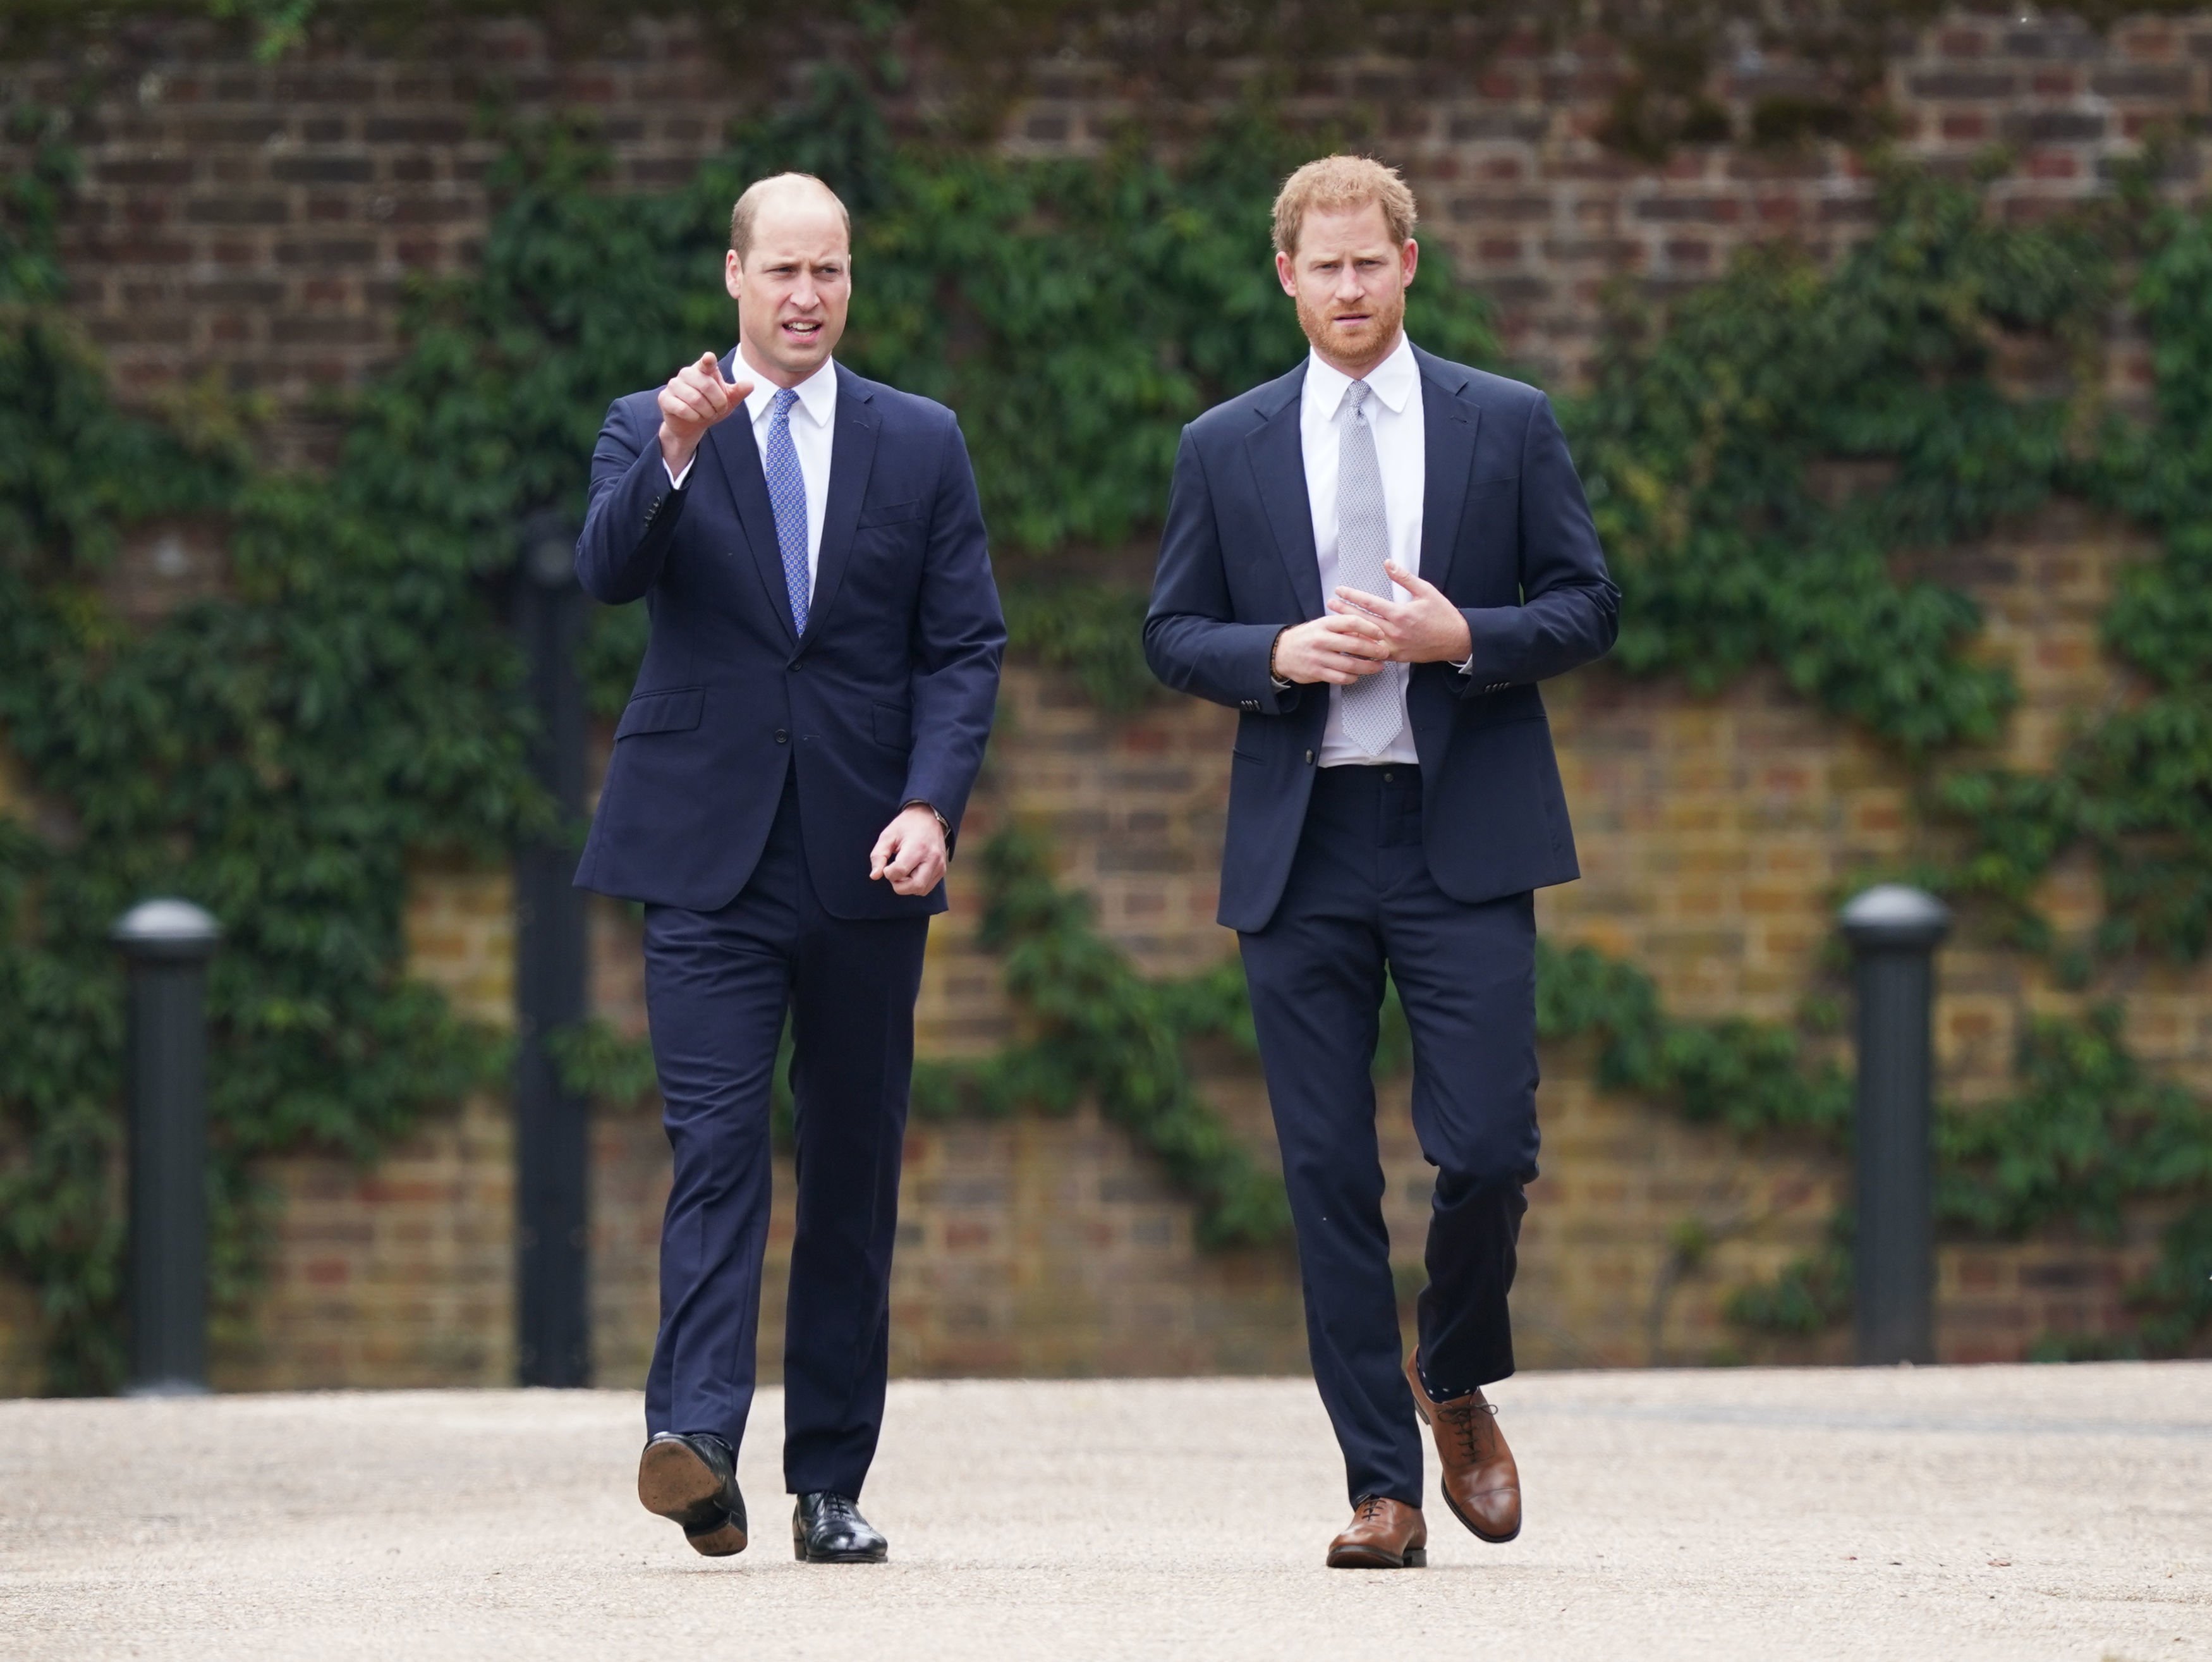 El príncipe William y el príncipe Harry en la inauguración de una estatua de la princesa Diana en el jardín hundido del Palacio de Kensington, el 1 de julio de 2021, en Londres, Inglaterra. | Foto: Getty Images